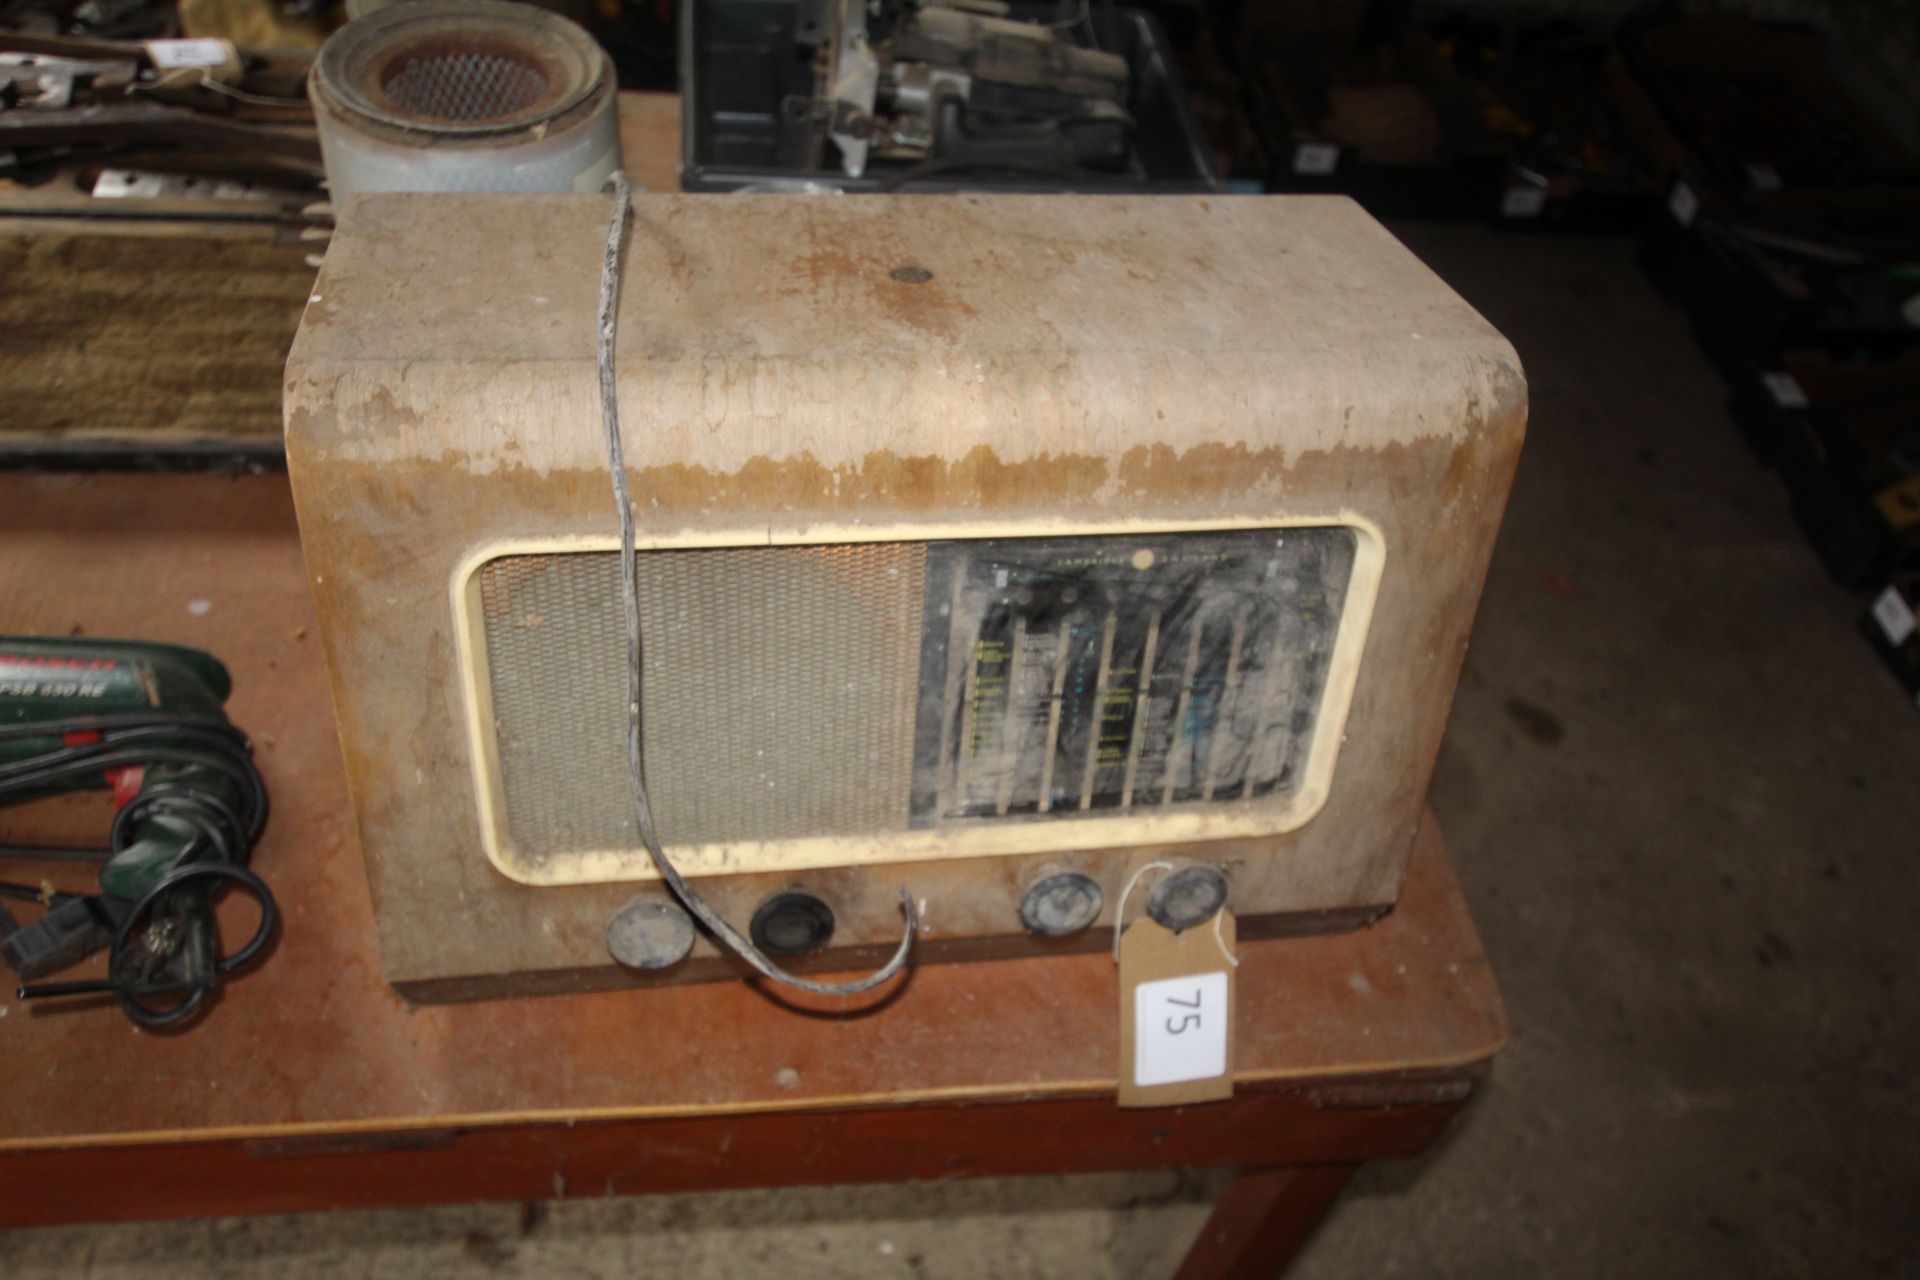 Pye vintage radio, sold as a collectors item.